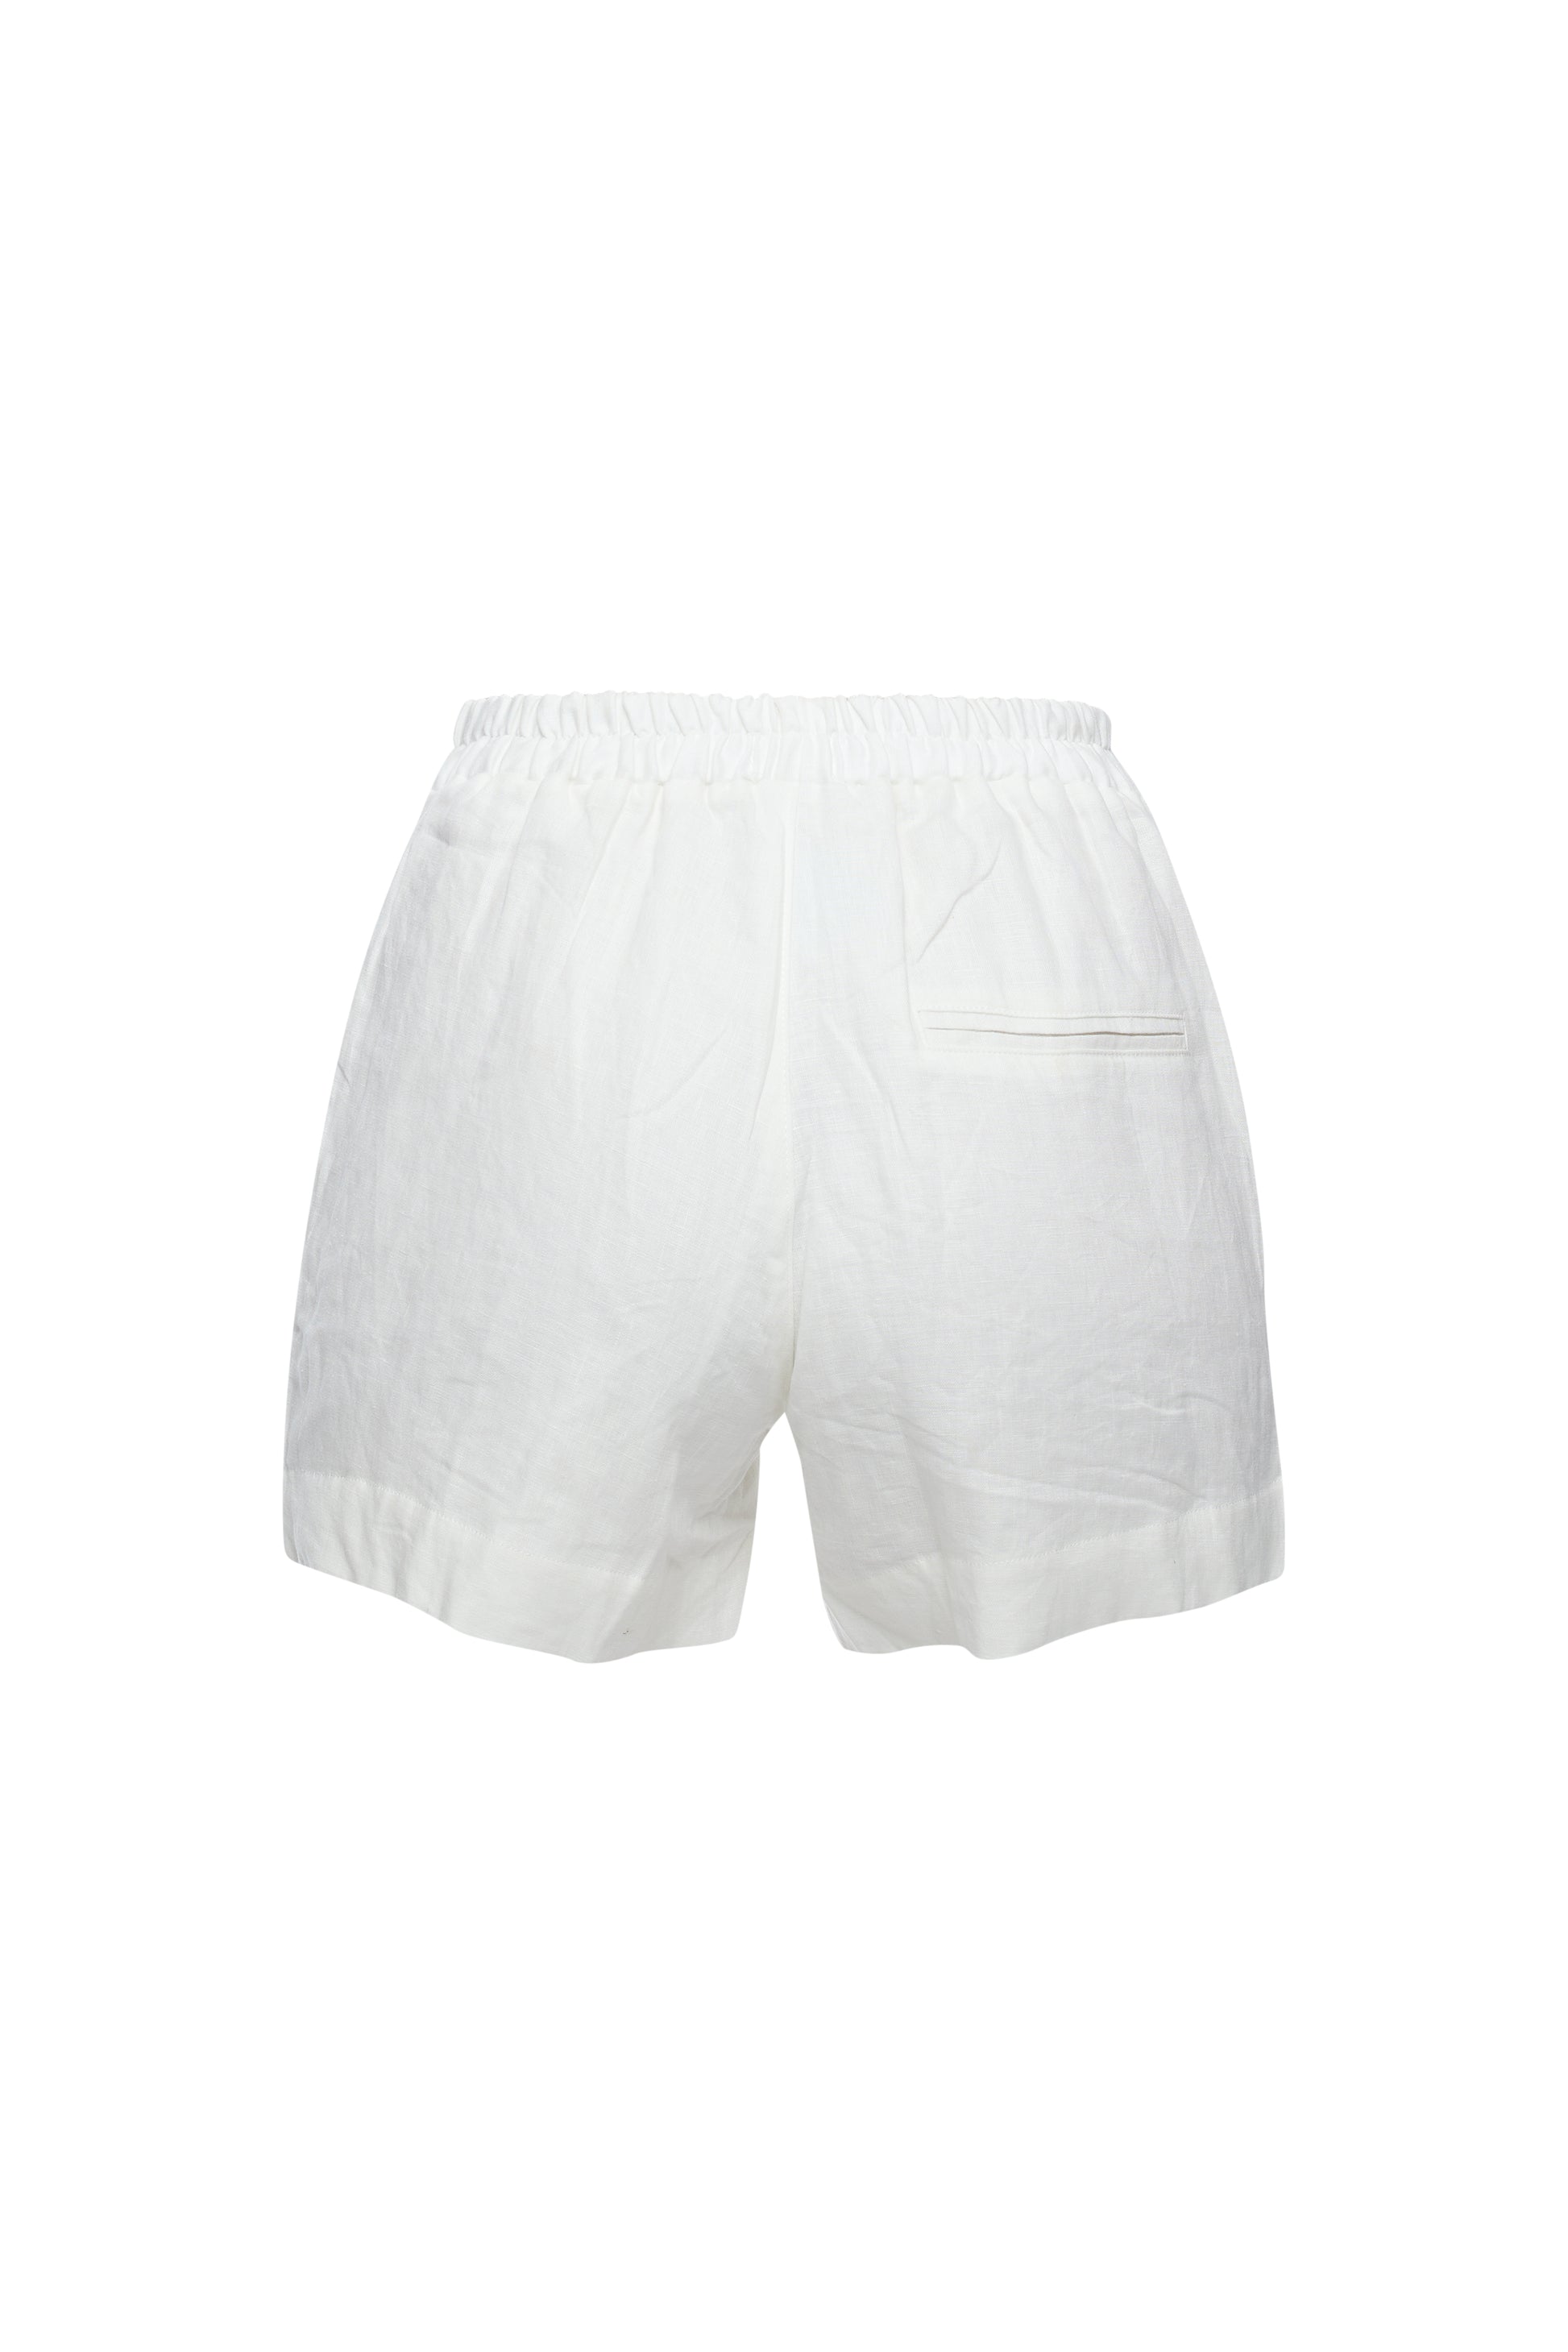 100% European Linen Shorts